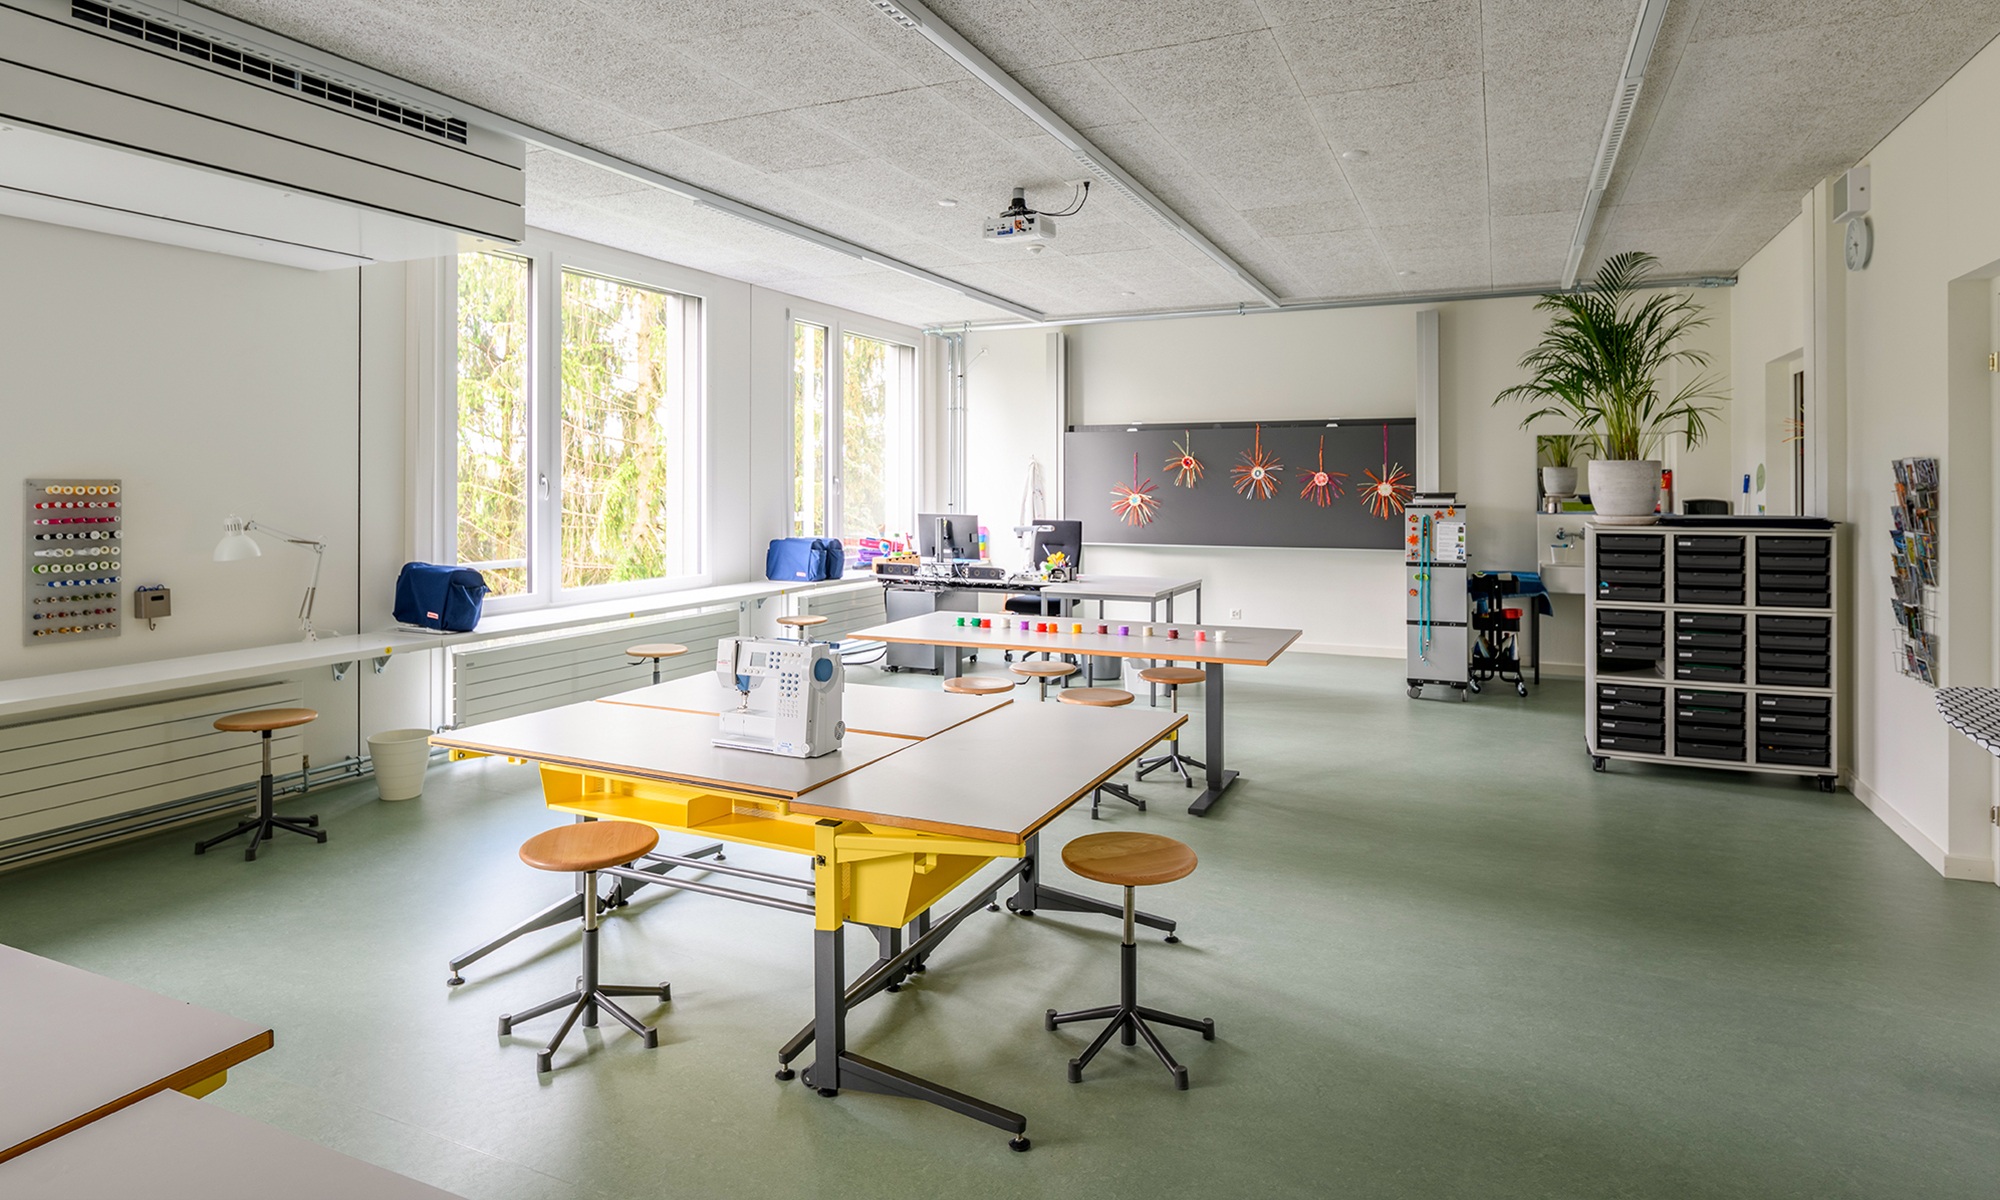 Innenansicht eines Gruppenraumes im Schulhaus Grenzhof Luzern mit Nähmaschine auf dem Tisch